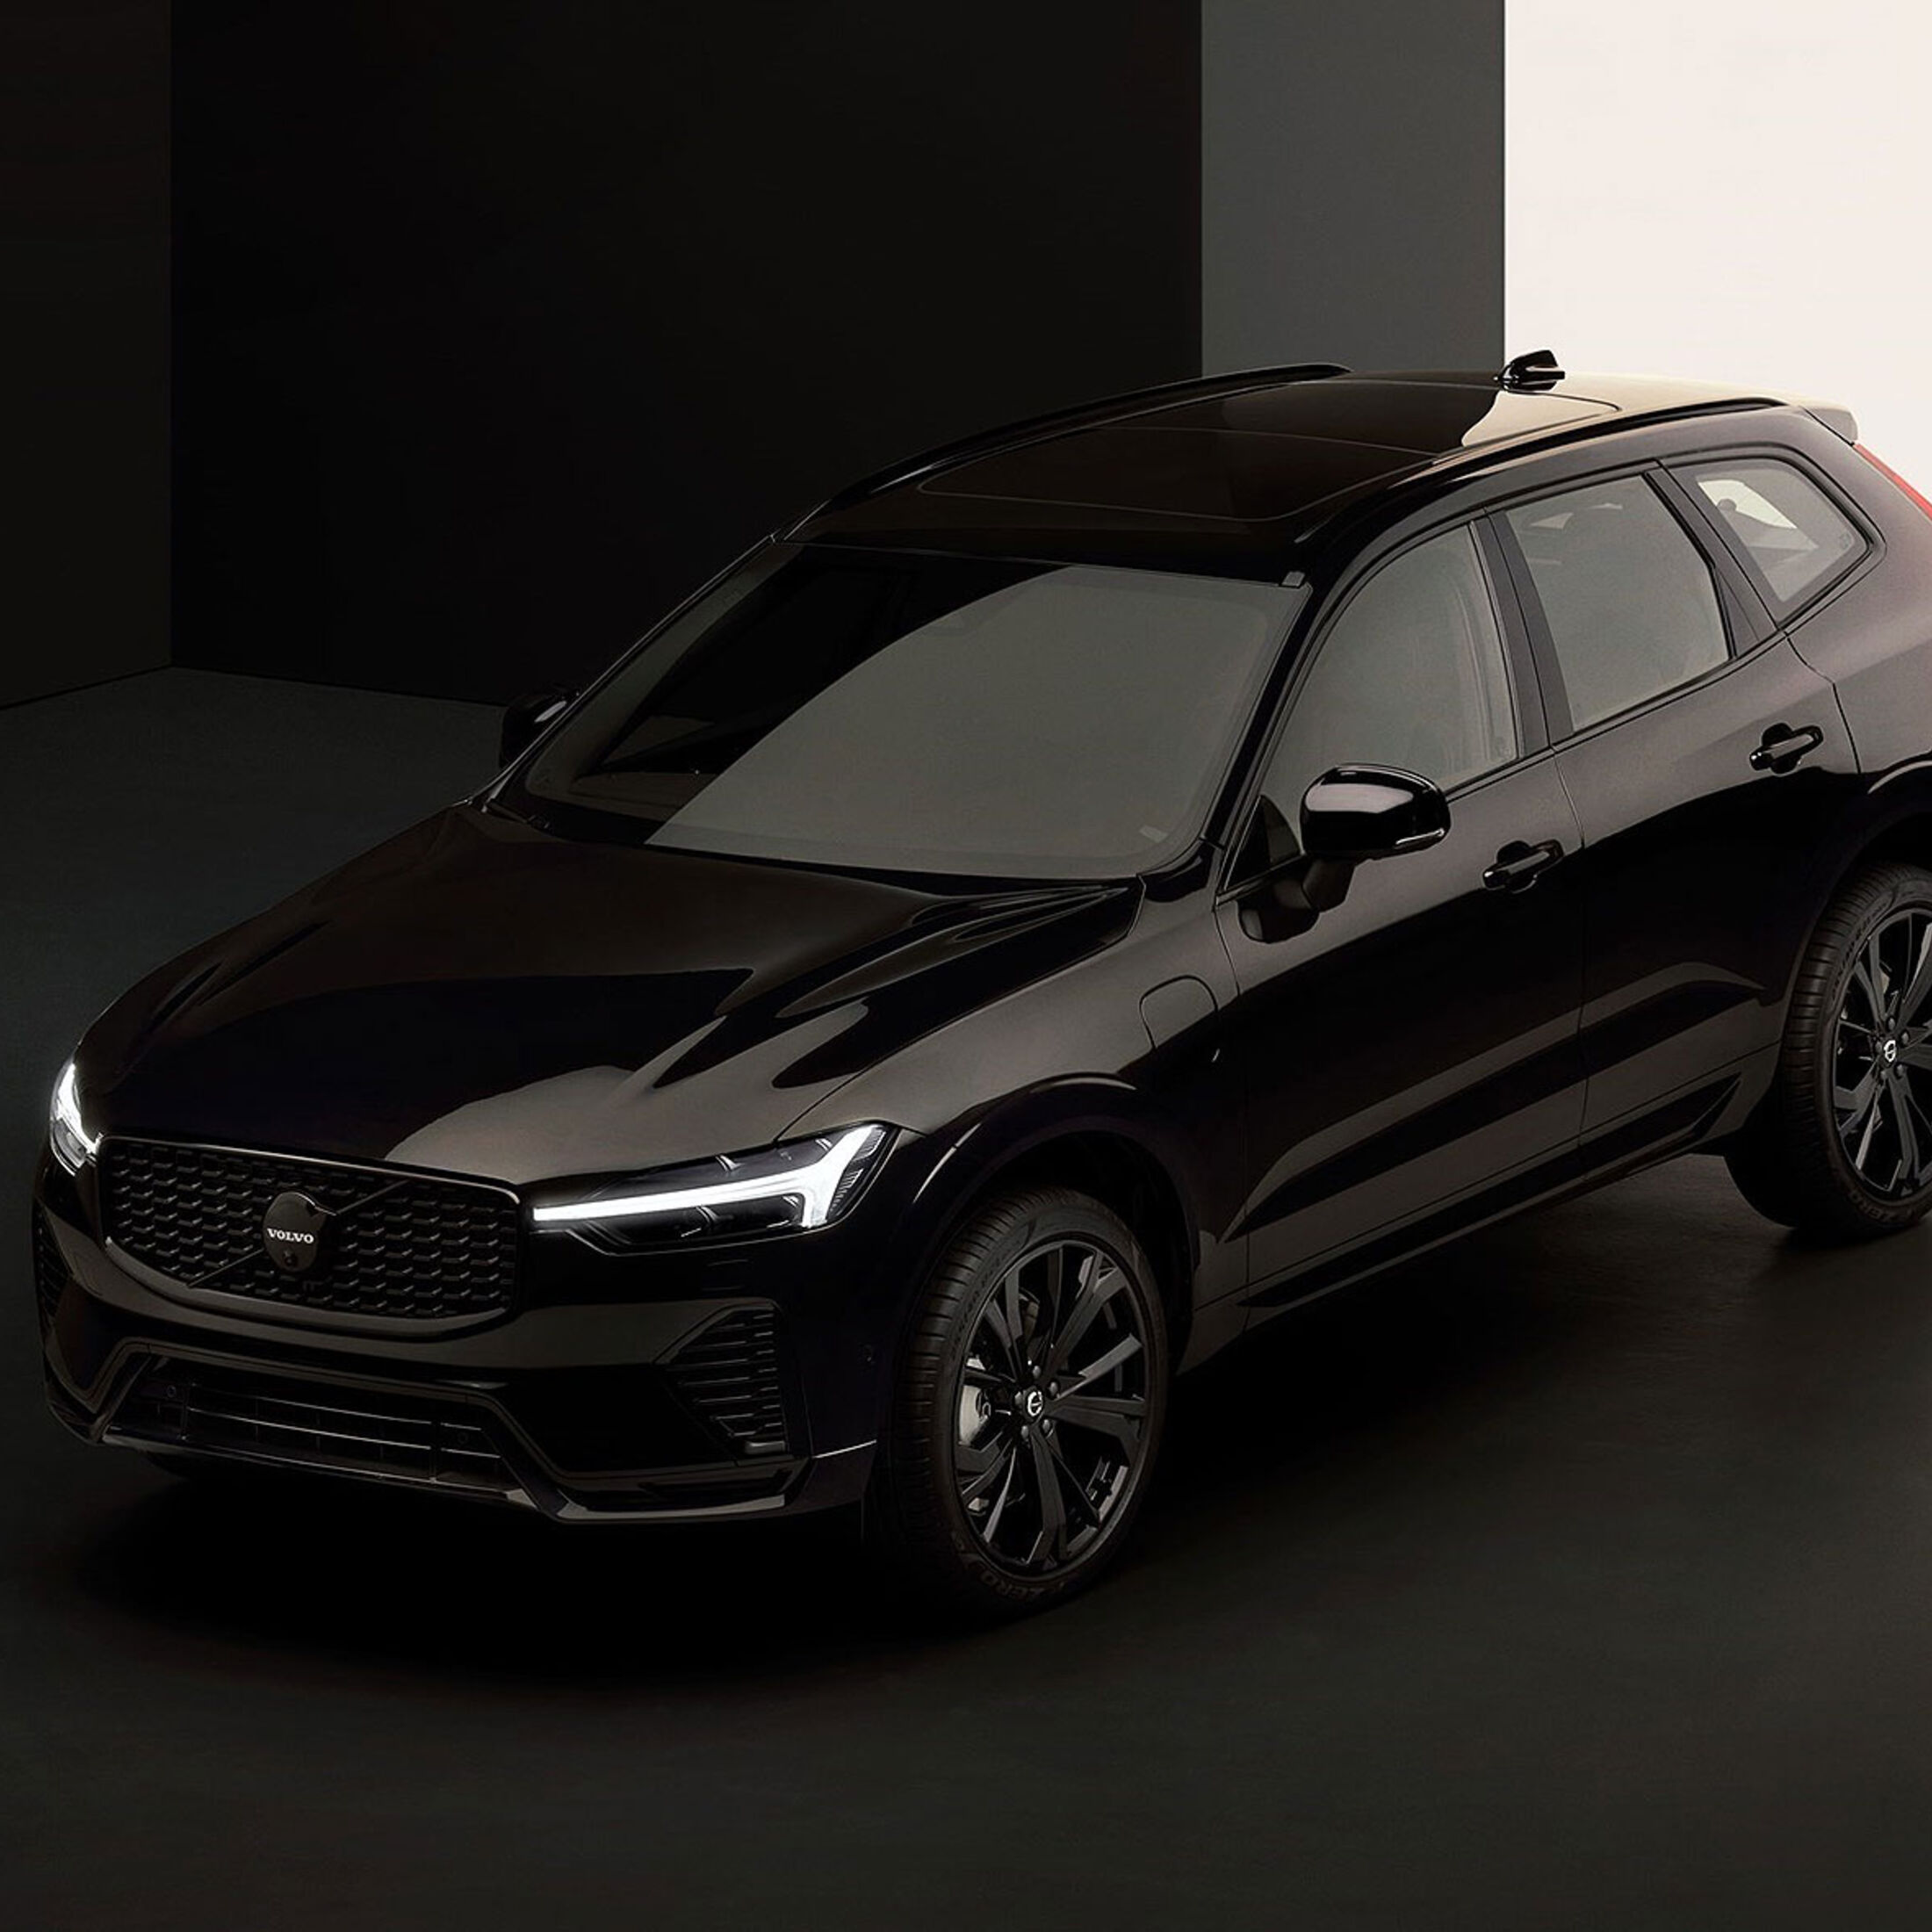 Volvo XC60 Black Edition: Schwarzes Sondermodell